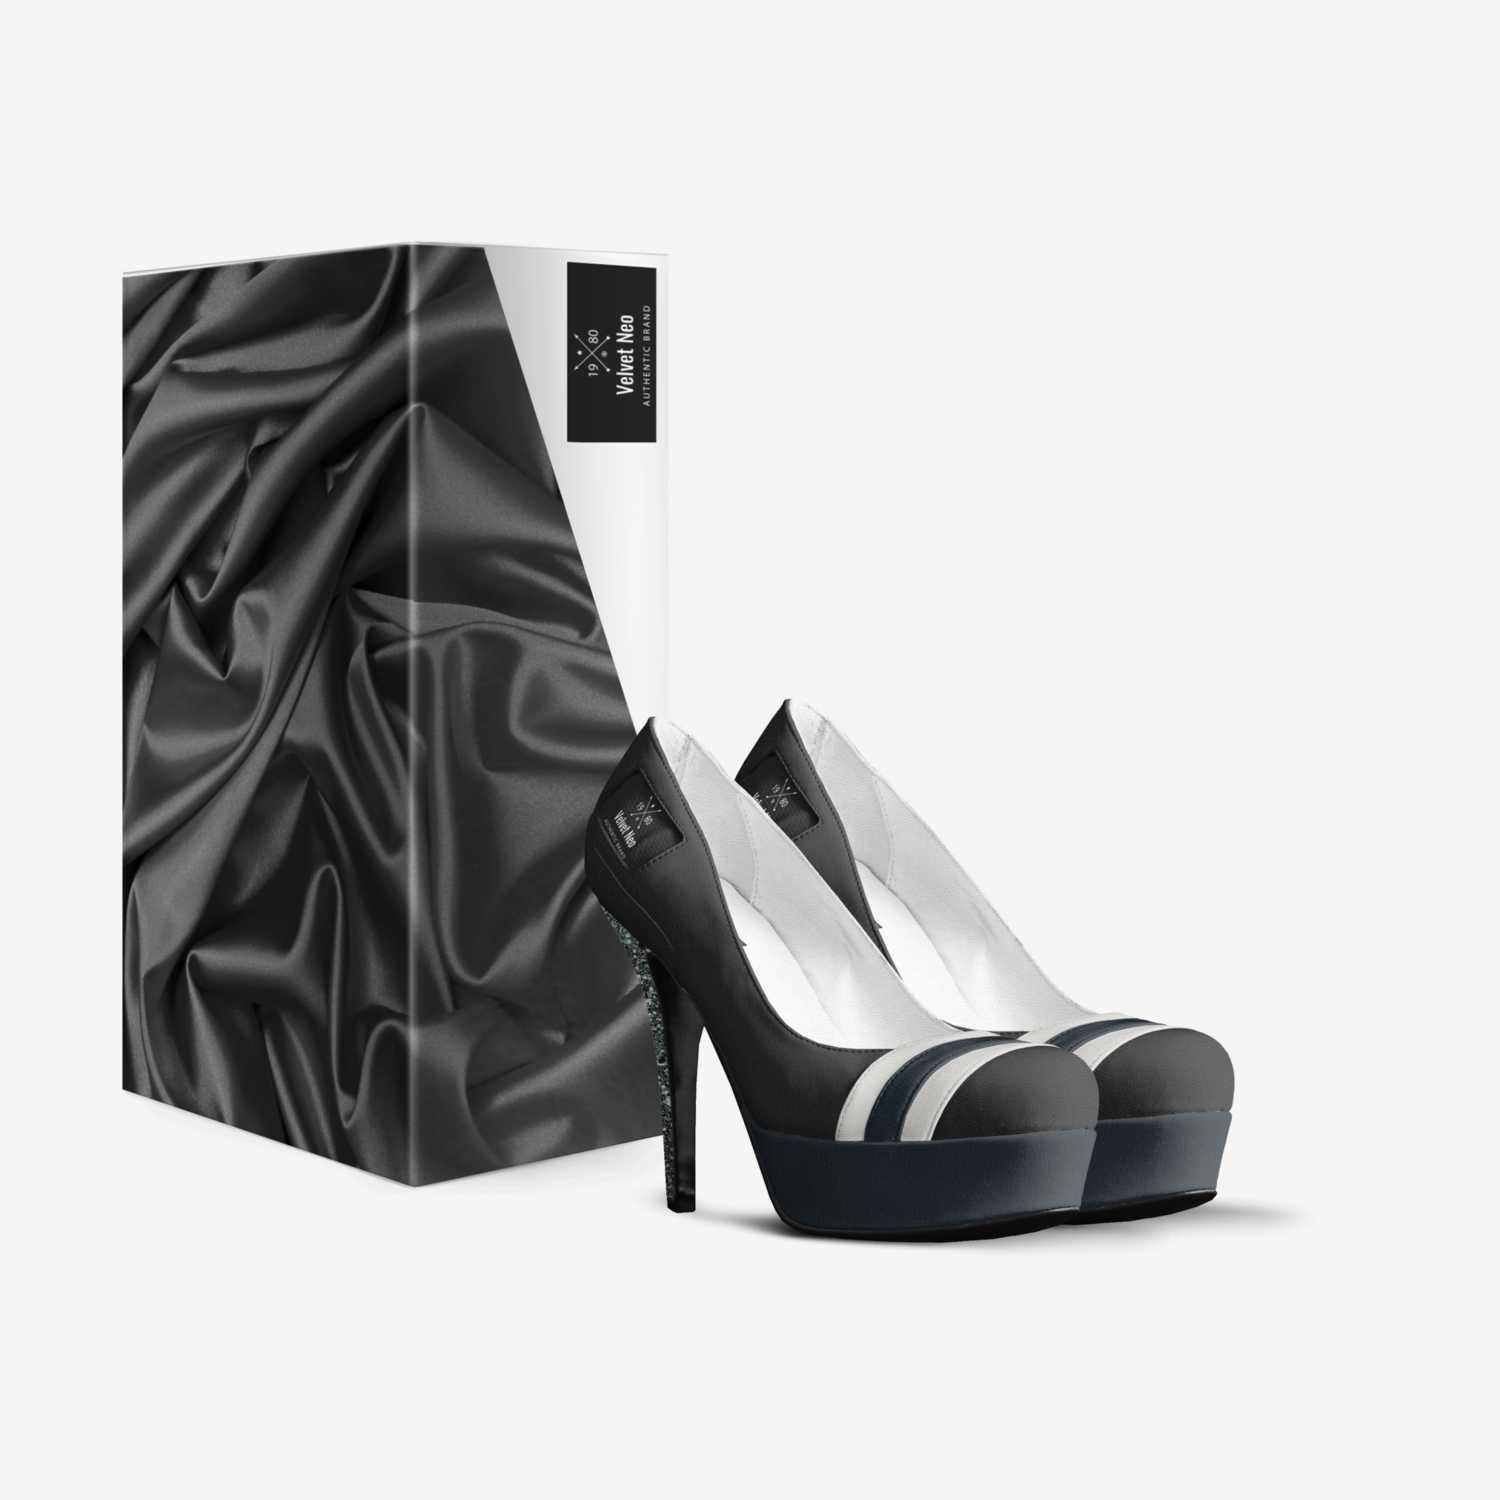 Velvet Neo custom made in Italy shoes by Shantae Esannason | Box view